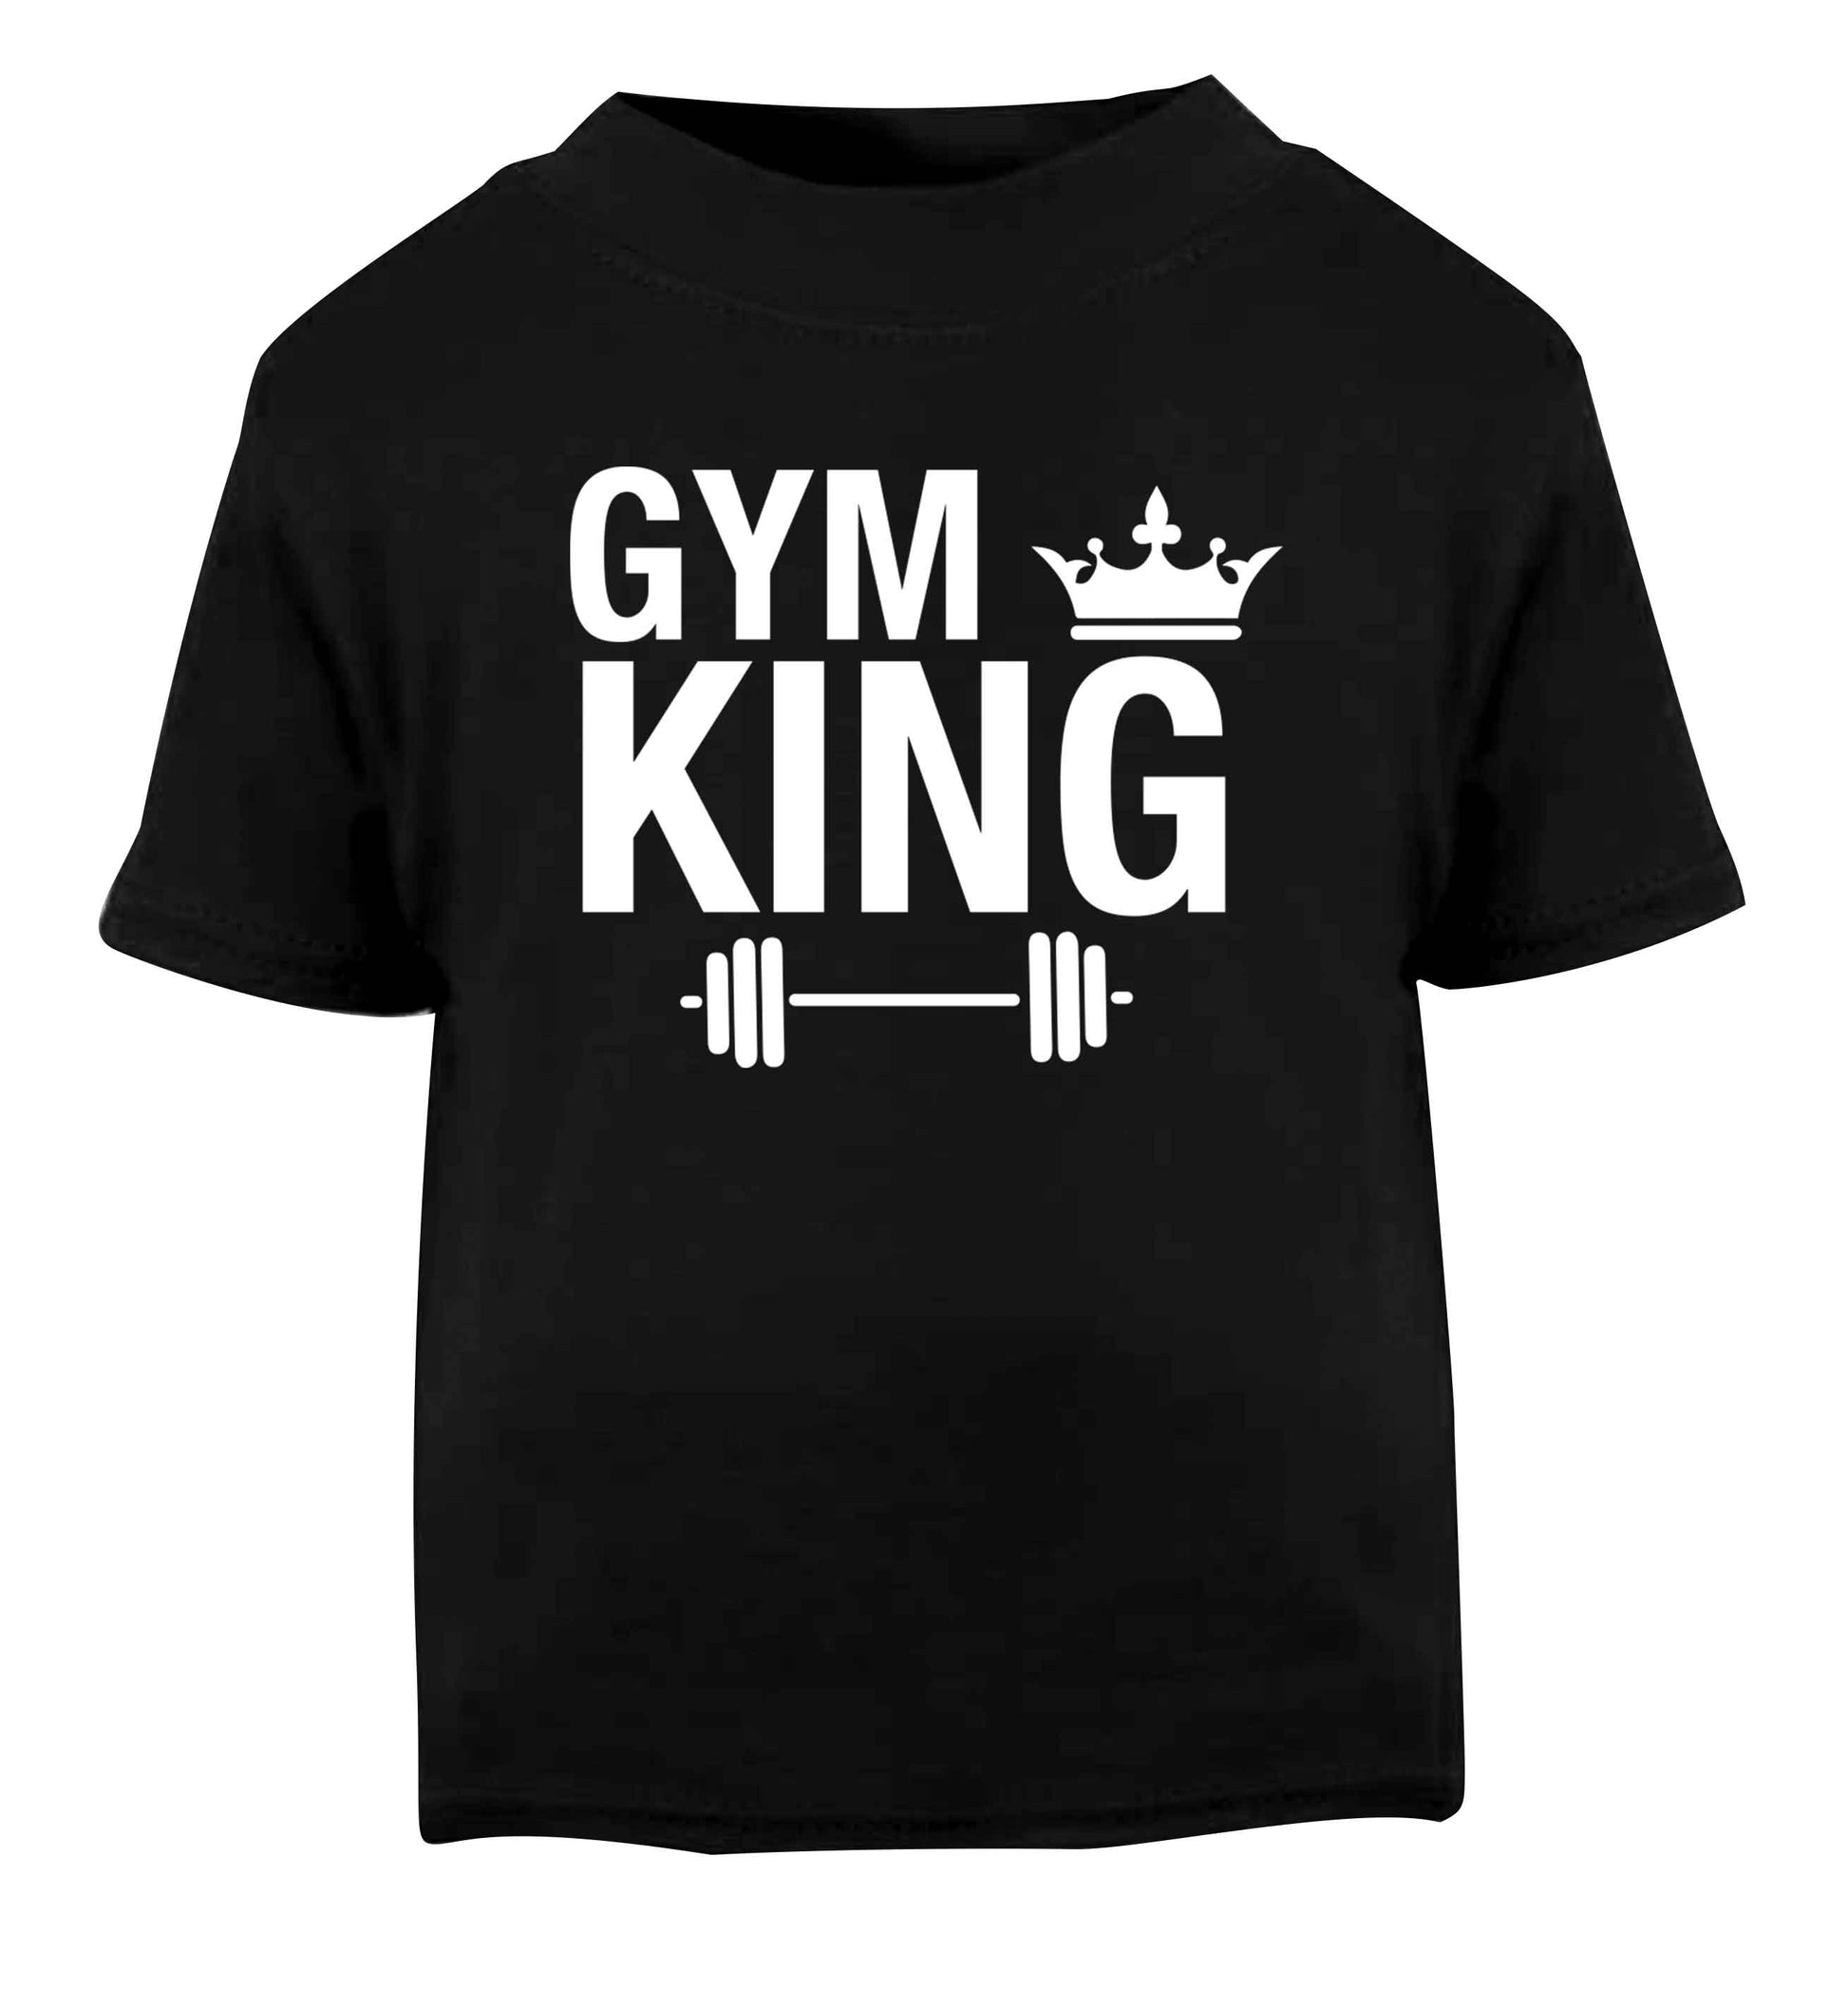 Gym king Black Baby Toddler Tshirt 2 years